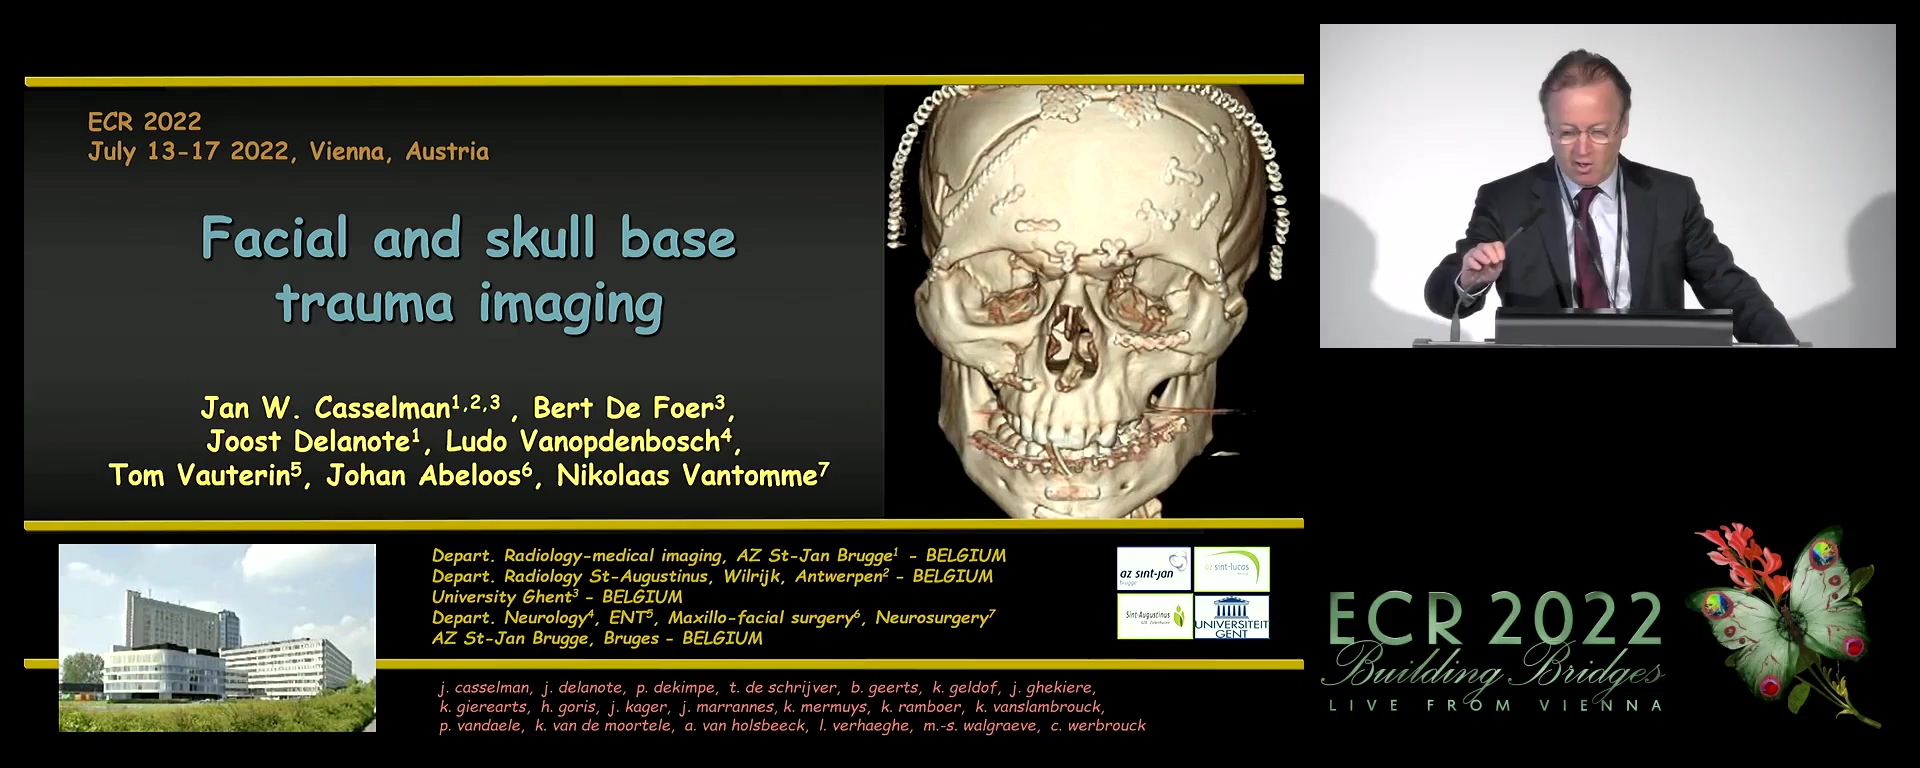 Facial and skull base trauma imaging